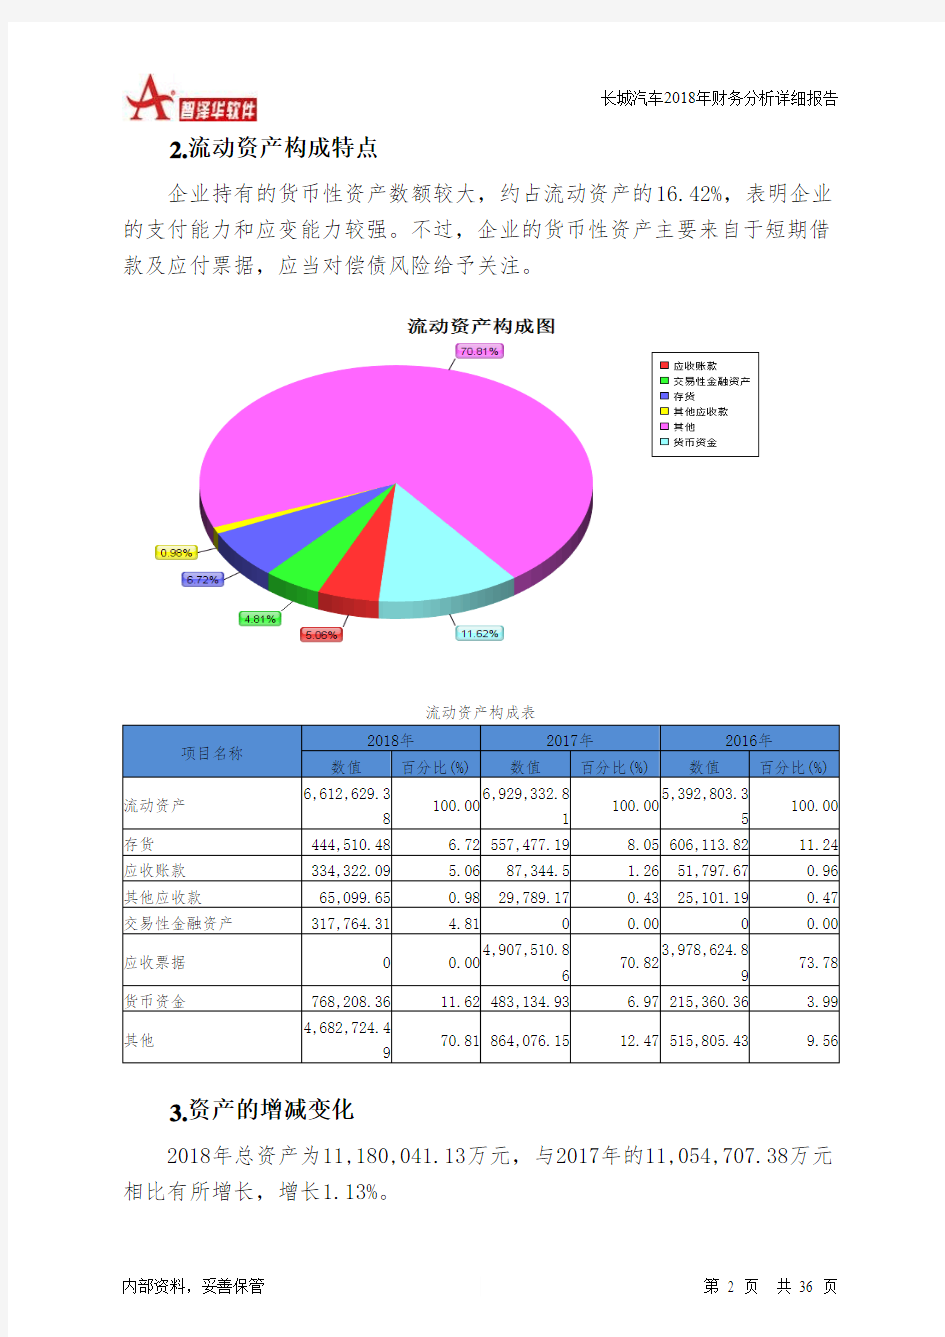 长城汽车2018年财务分析详细报告-智泽华